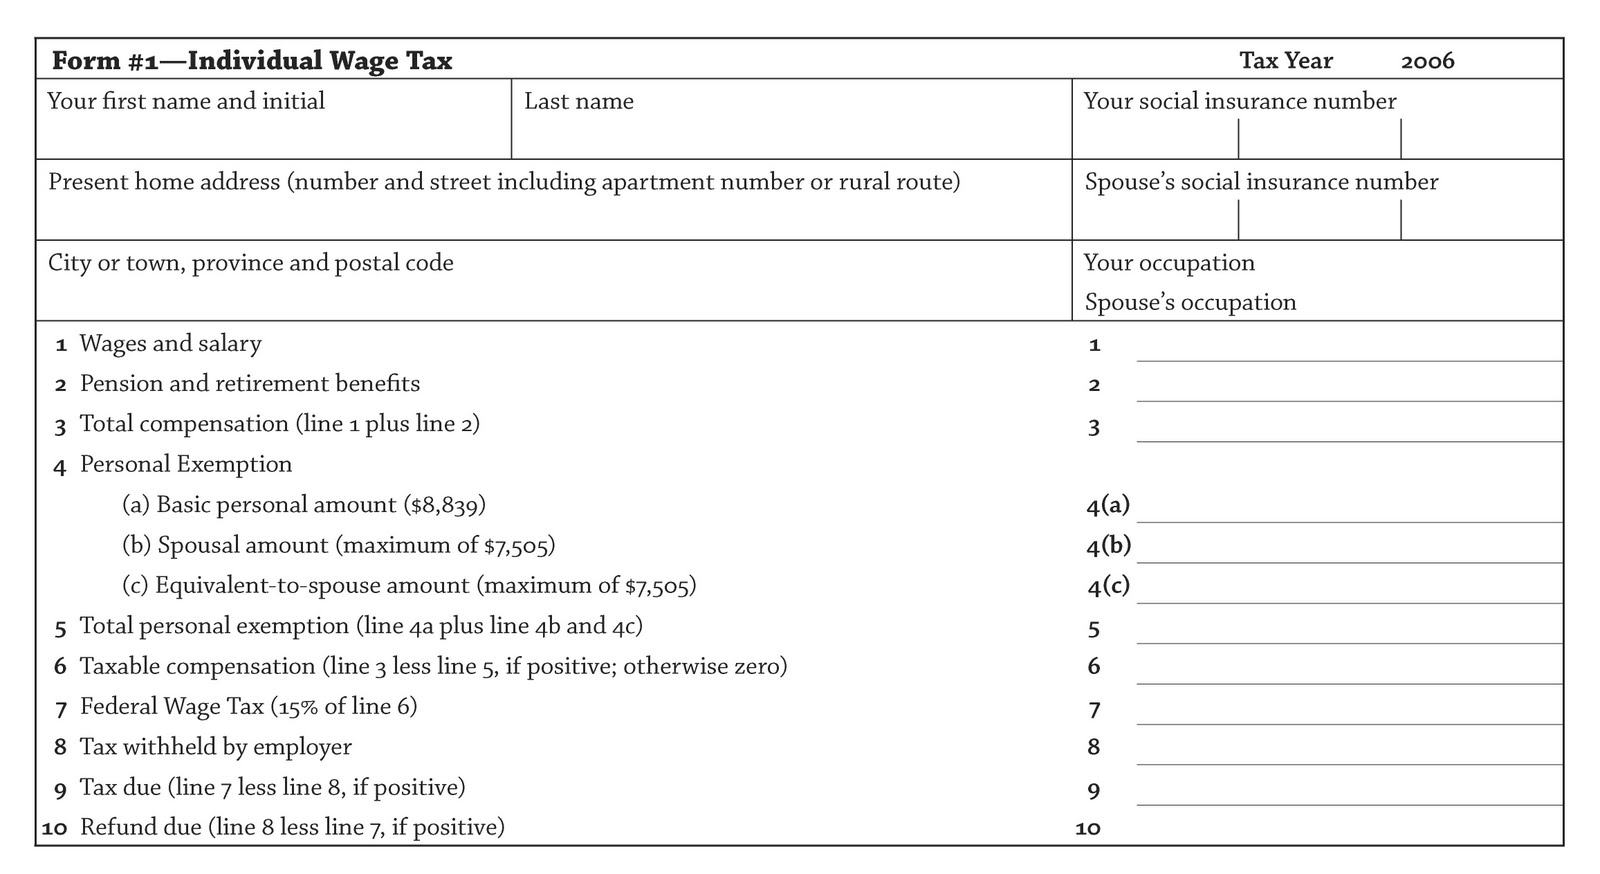 hong-kong-tax-return-guide-taxw